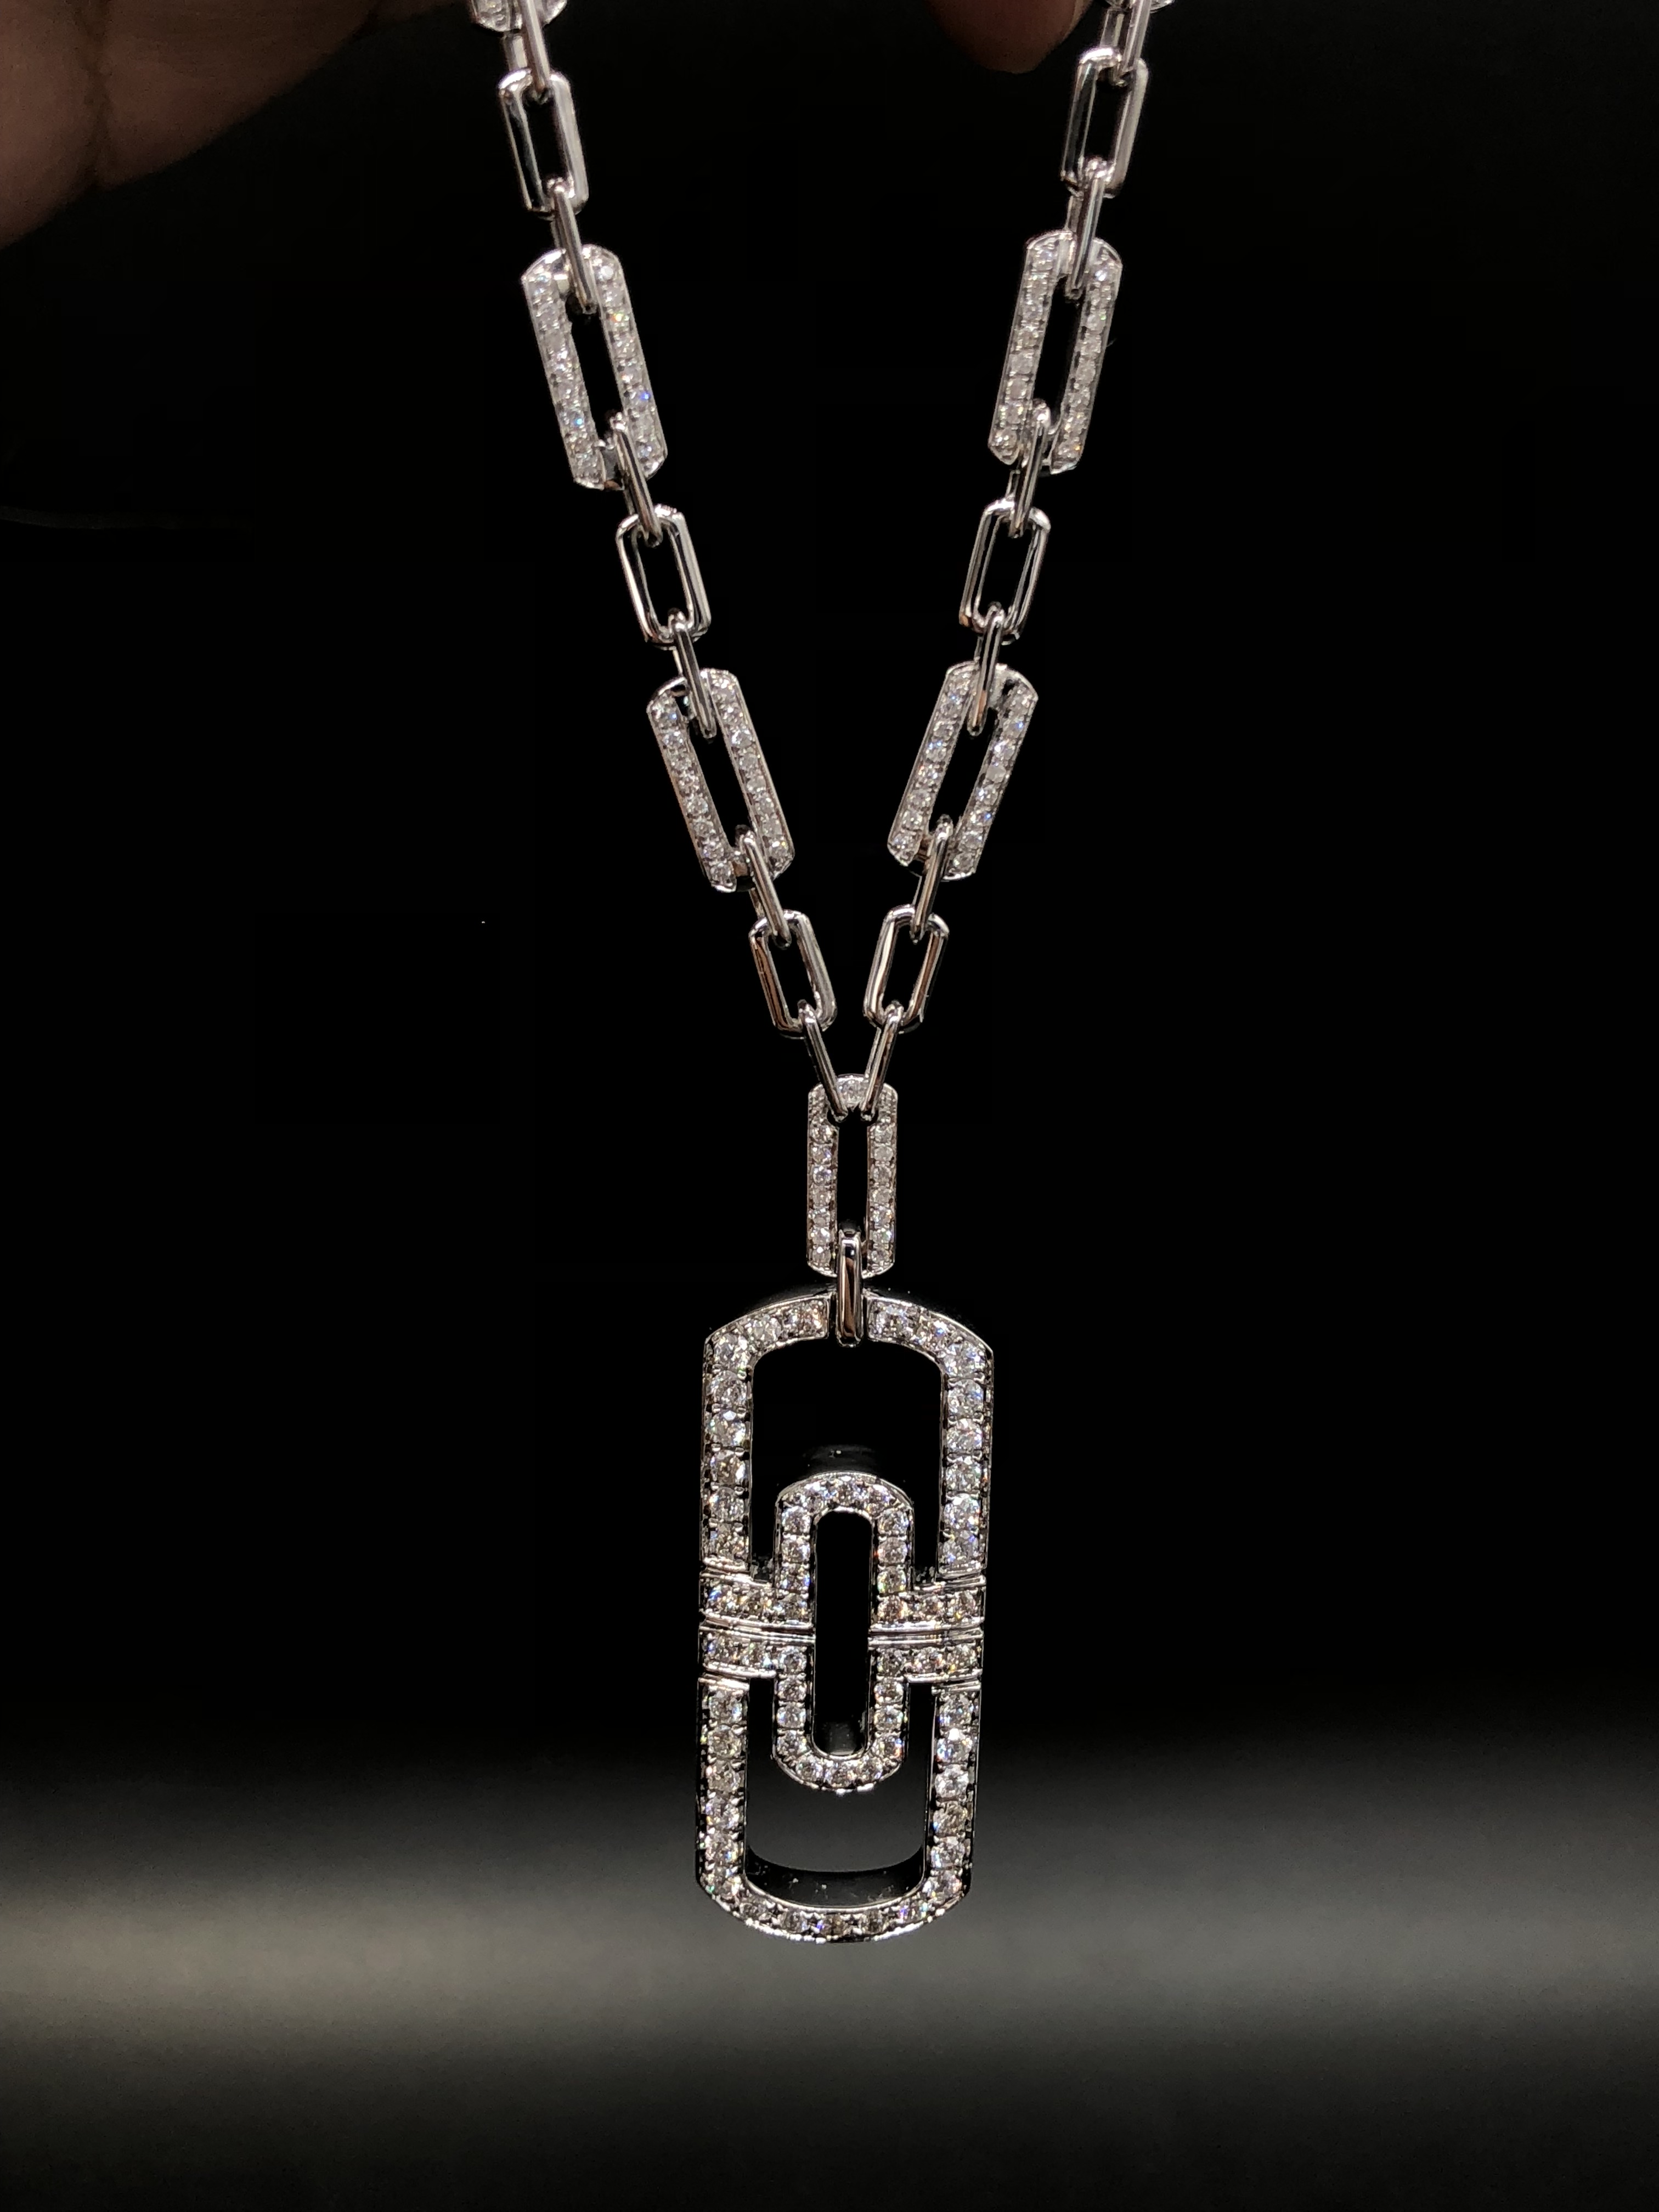 高清图|宝格丽古董典藏系列MUS0408项链图片1|腕表之家-珠宝